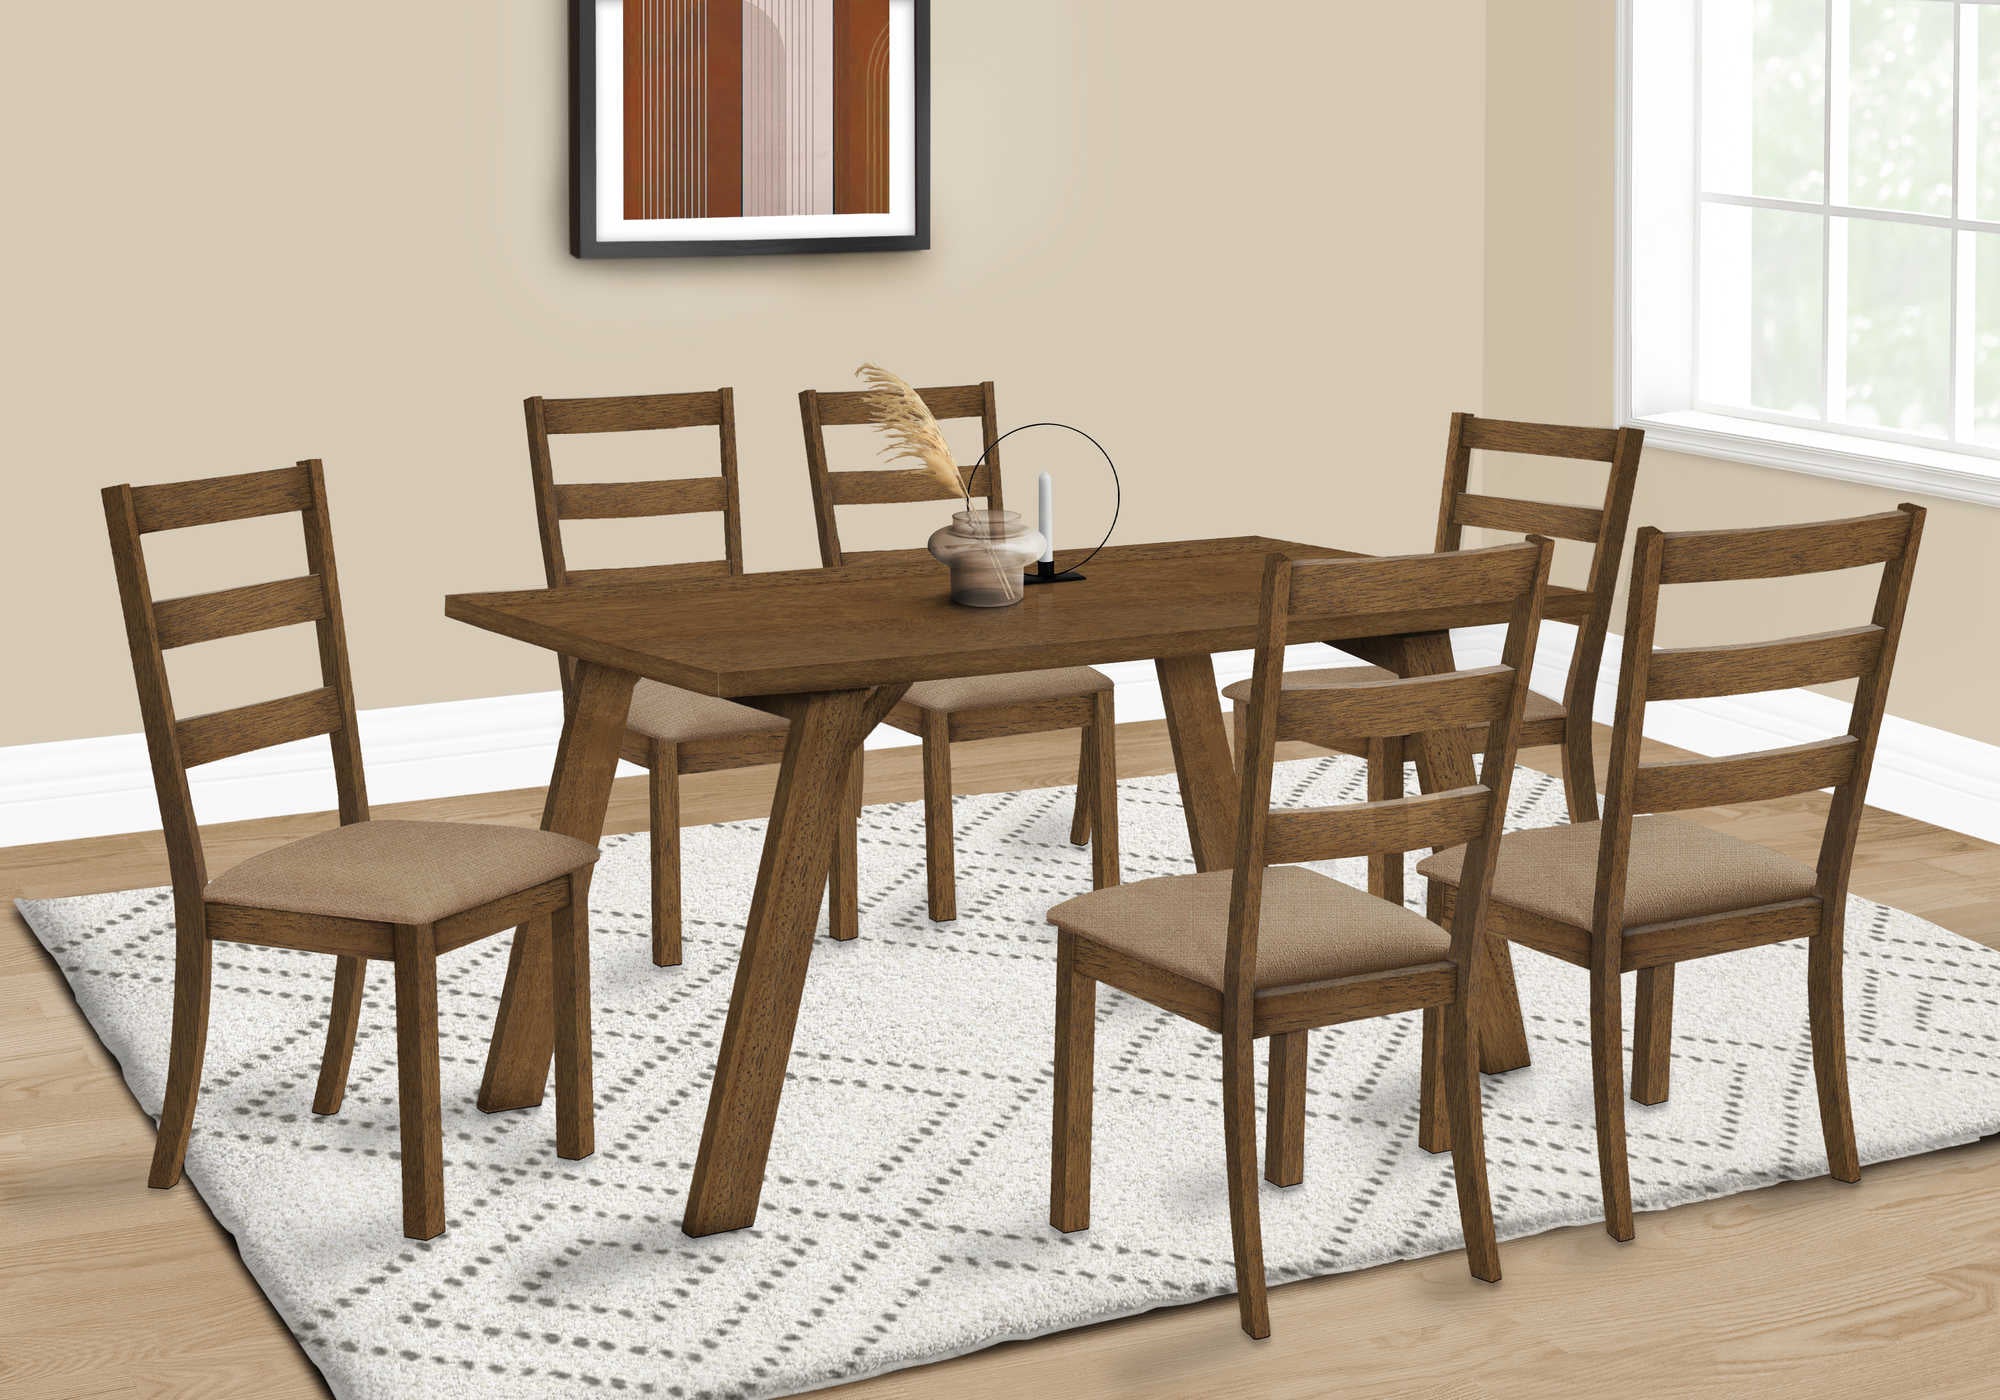 DINING TABLE - BROWN WALNUT VENEER  36X 60